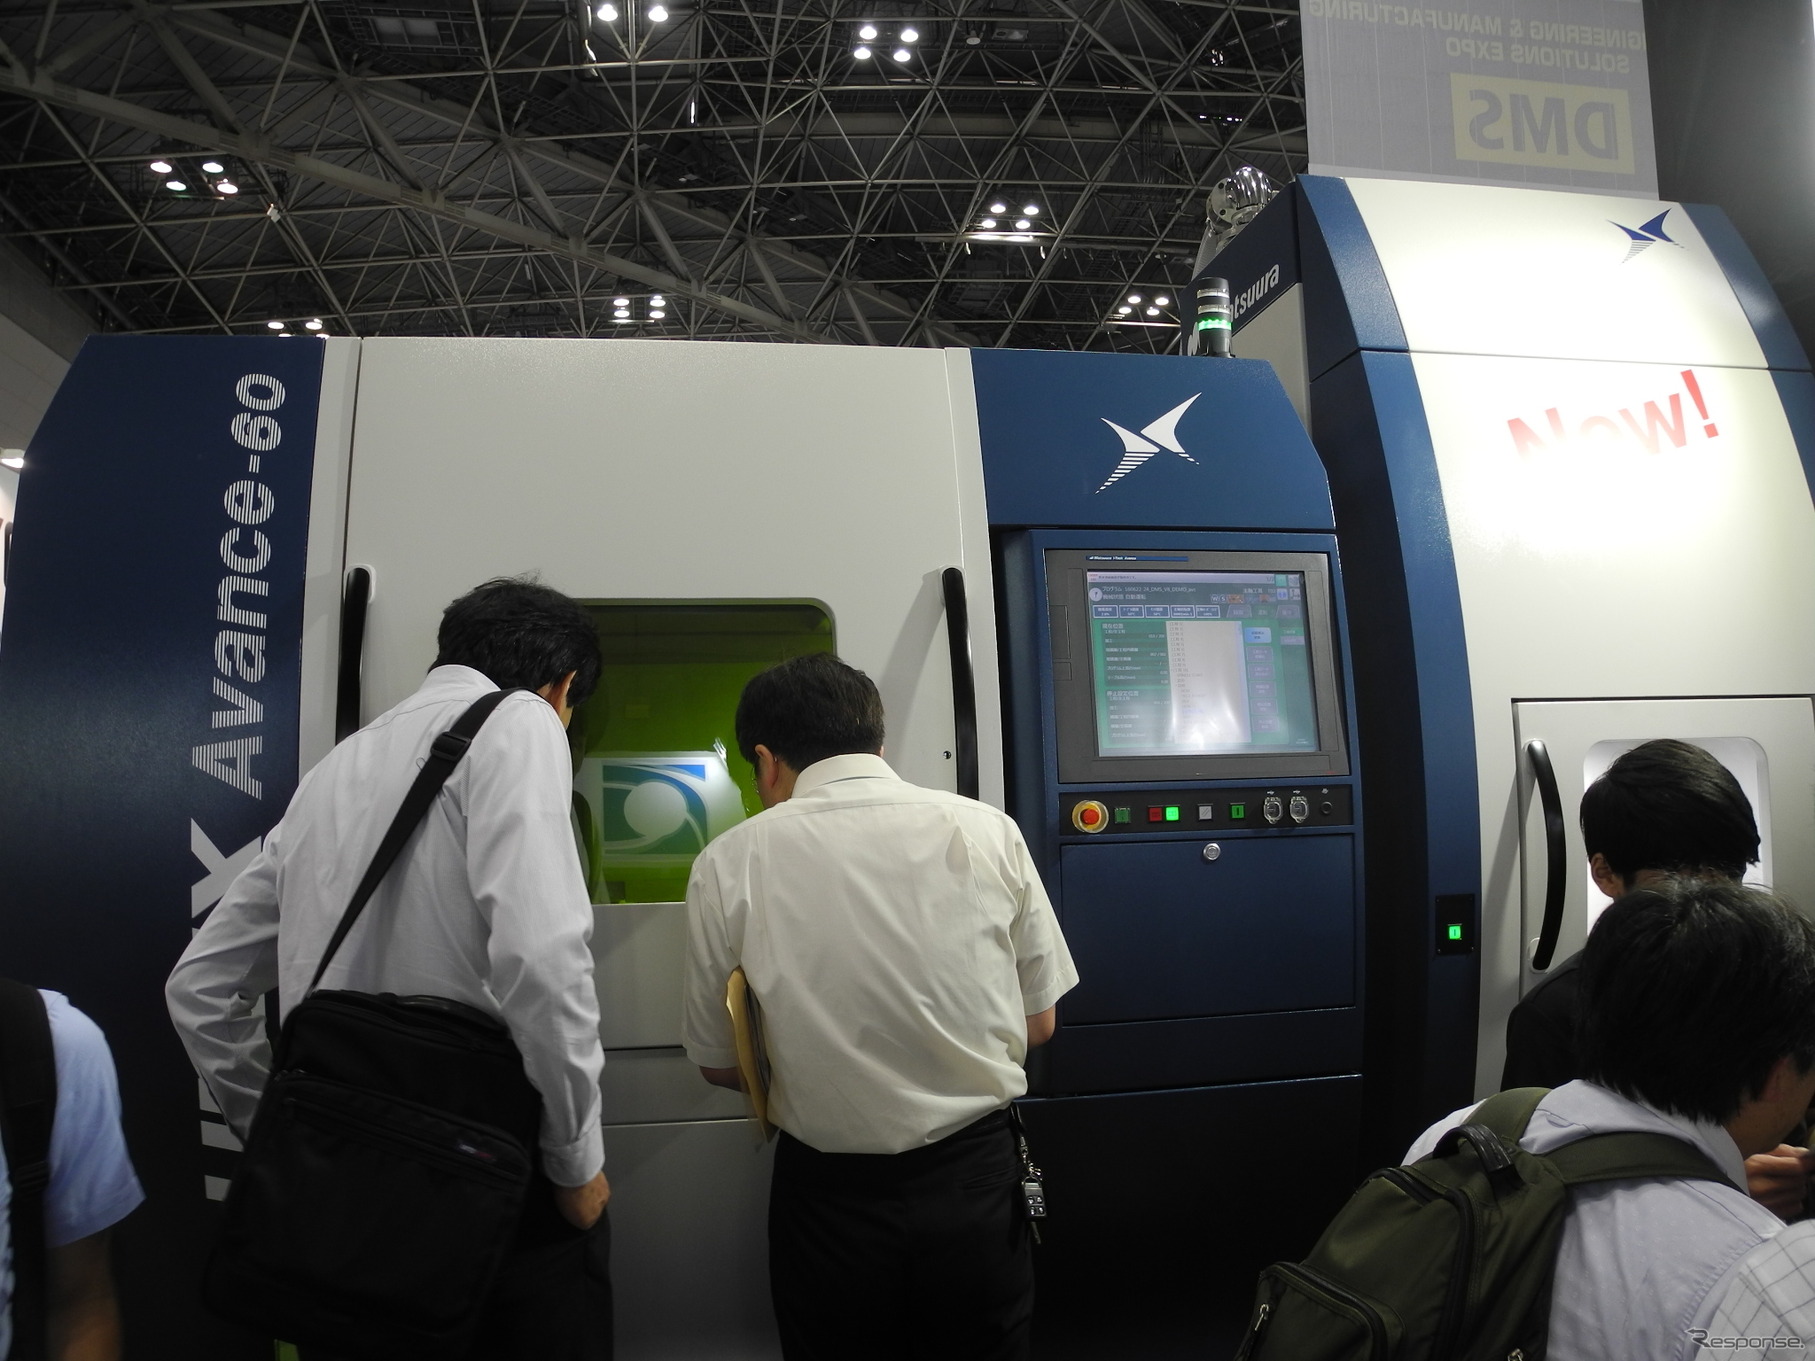 松浦機械製作所が開発したハイブリッド金属3Dプリンタ「LUMEX Advance-60」